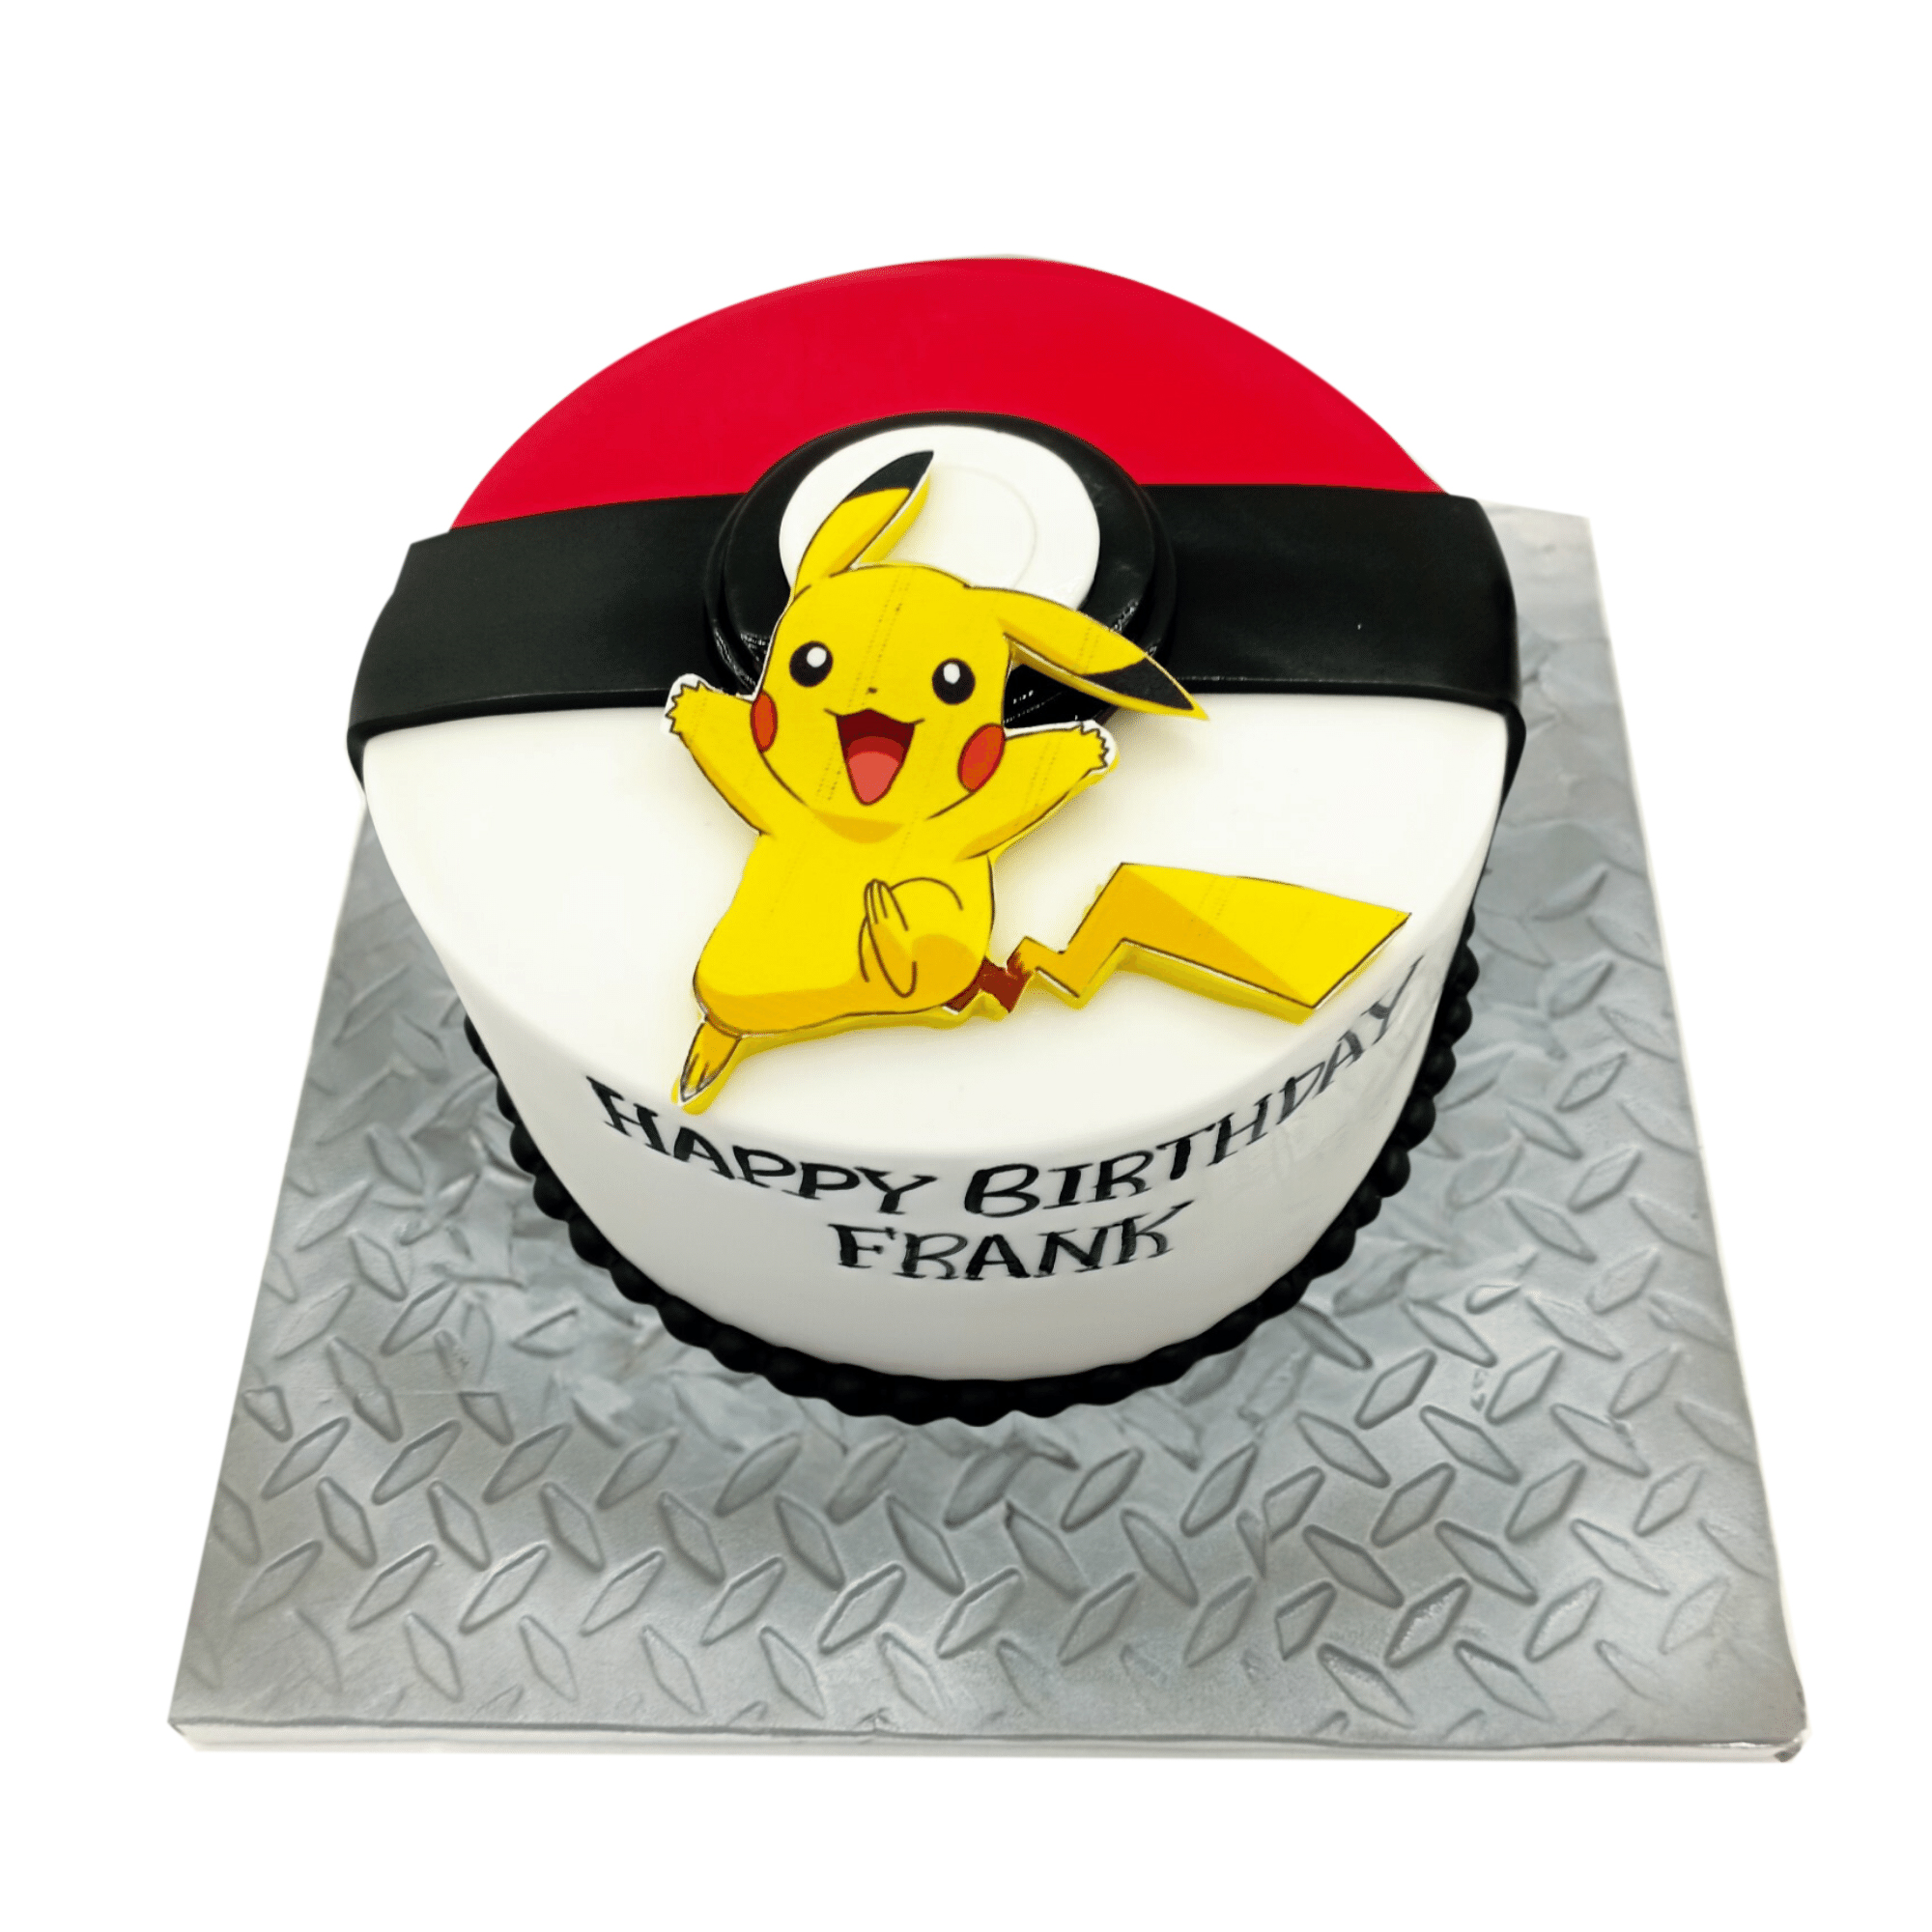 Pokémon cake